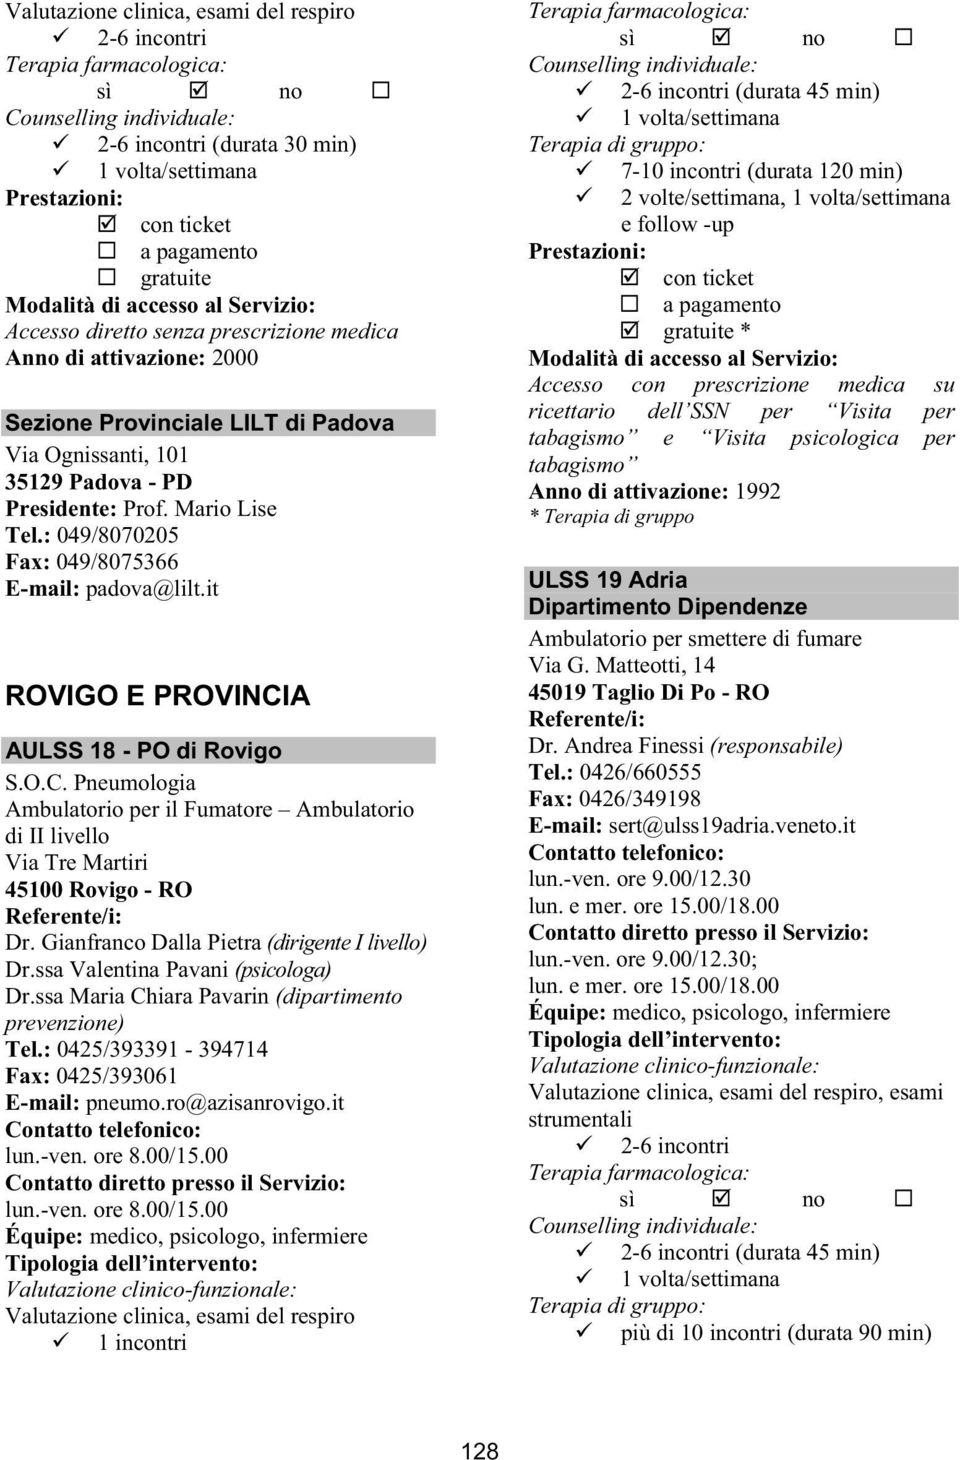 Gianfranco Dalla Pietra (dirigente I livello) Dr.ssa Valentina Pavani (psicologa) Dr.ssa Maria Chiara Pavarin (dipartimento prevenzione) Tel.: 0425/393391-394714 Fax: 0425/393061 E-mail: pneumo.